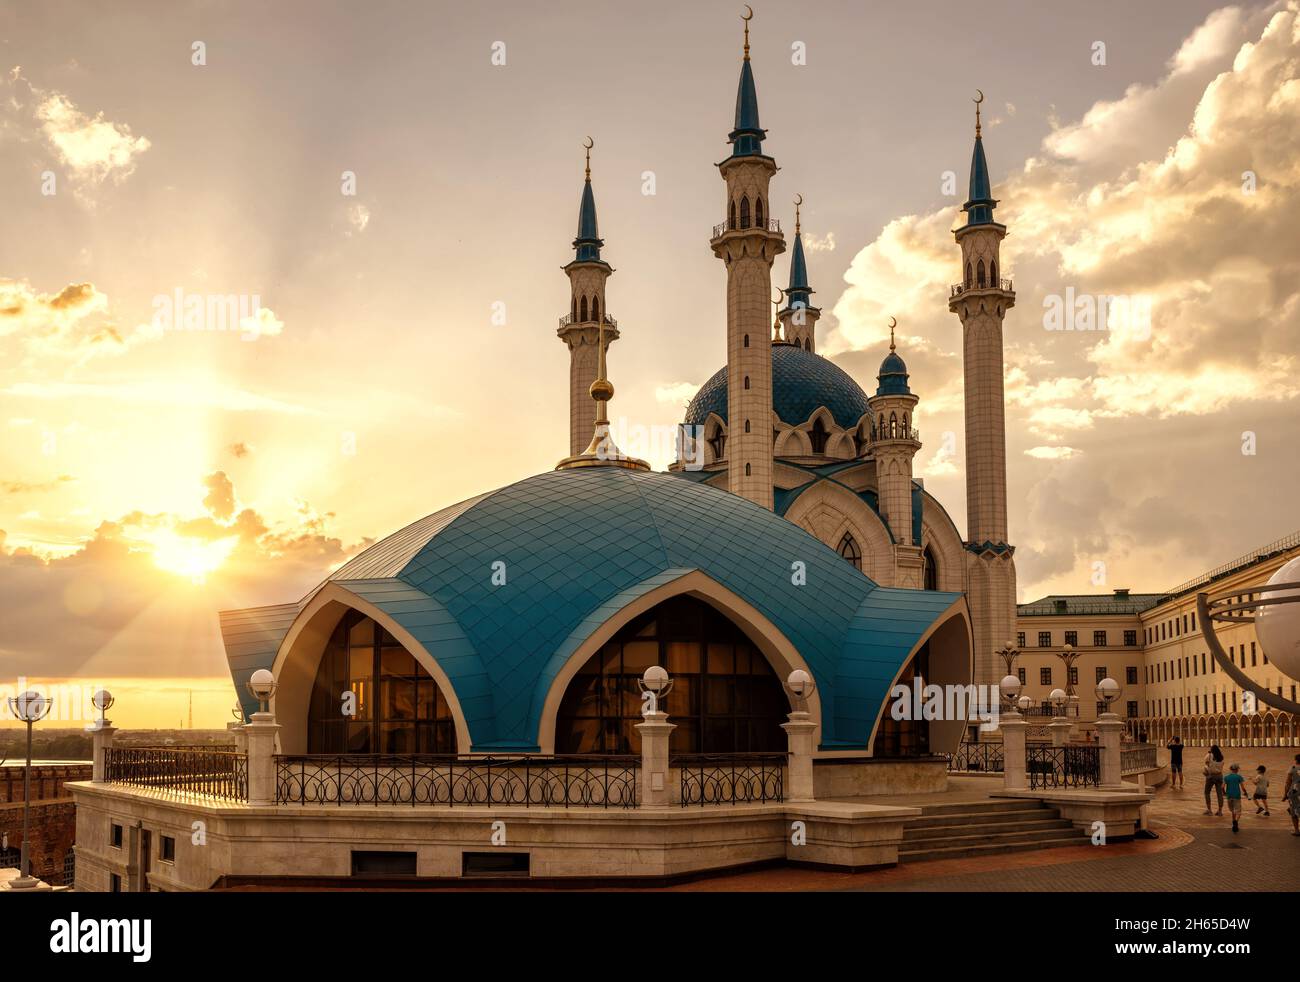 Mosquée Kul Sharif au Kremlin de Kazan au coucher du soleil, Tatarstan, Russie.C'est un monument historique de Kazan.Vue ensoleillée de l'architecture islamique, attraction touristique à Ka Banque D'Images